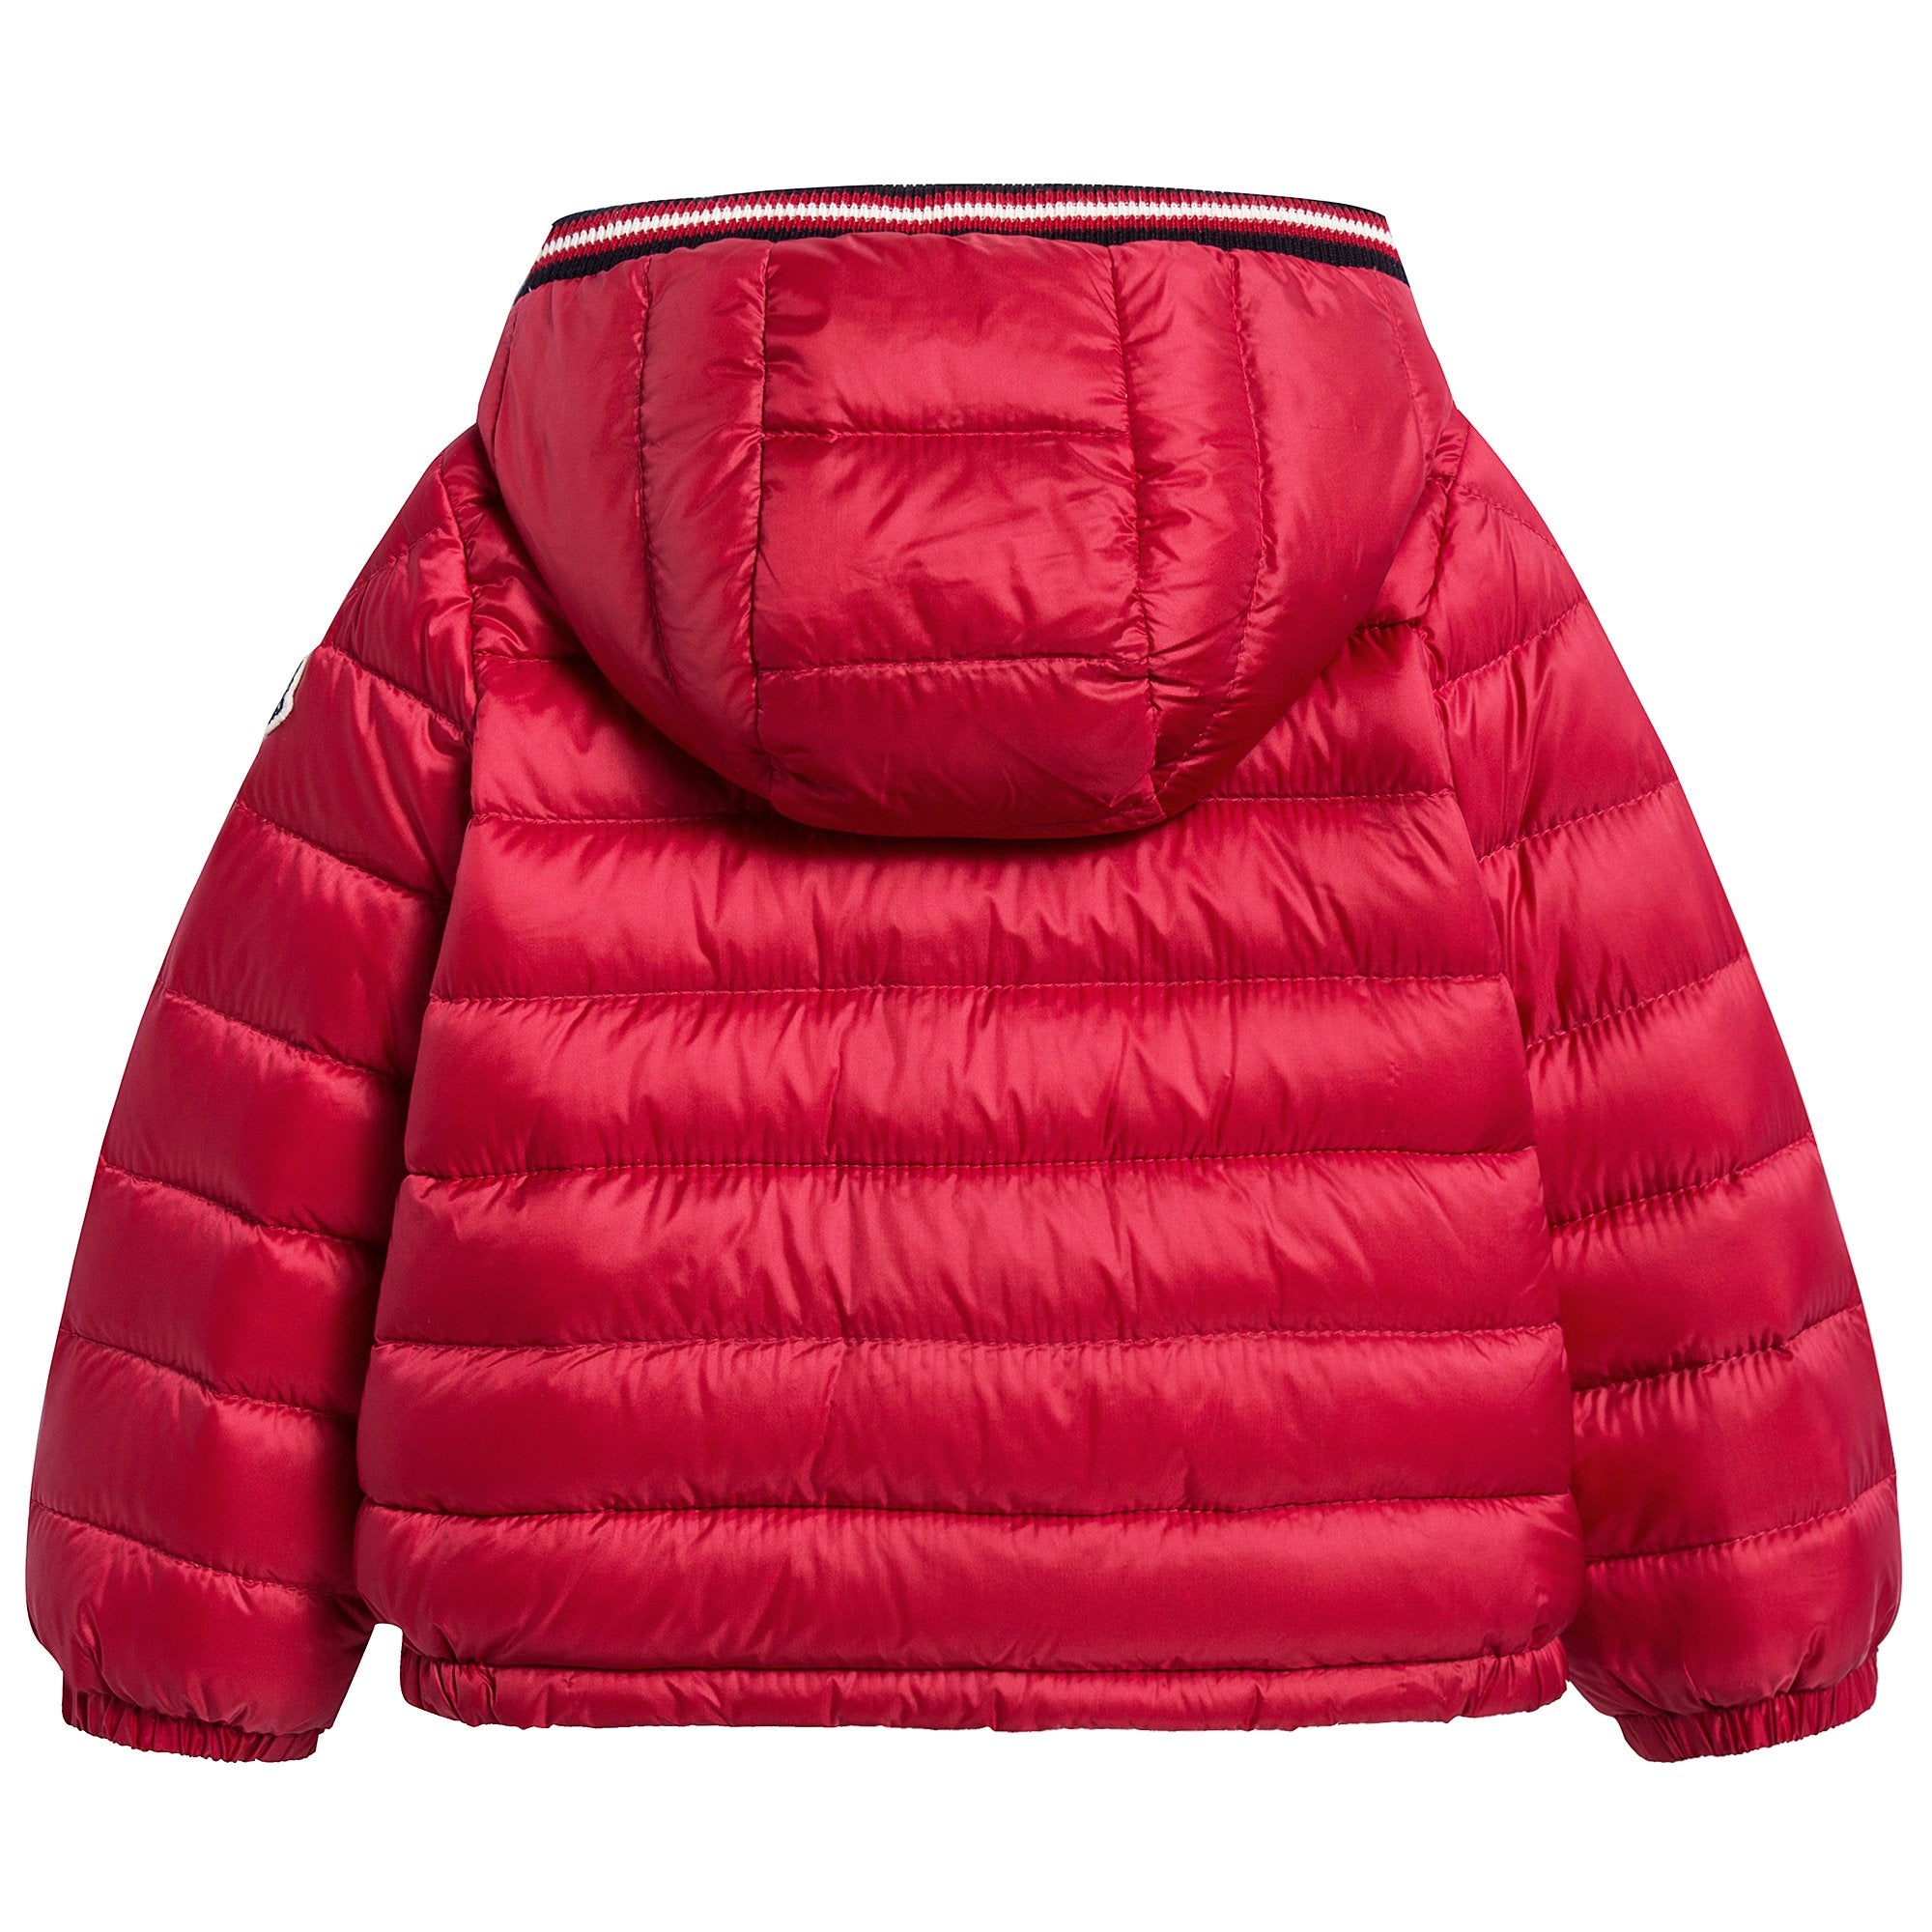 Baby Red "Blasimon Giubbotto" Coat